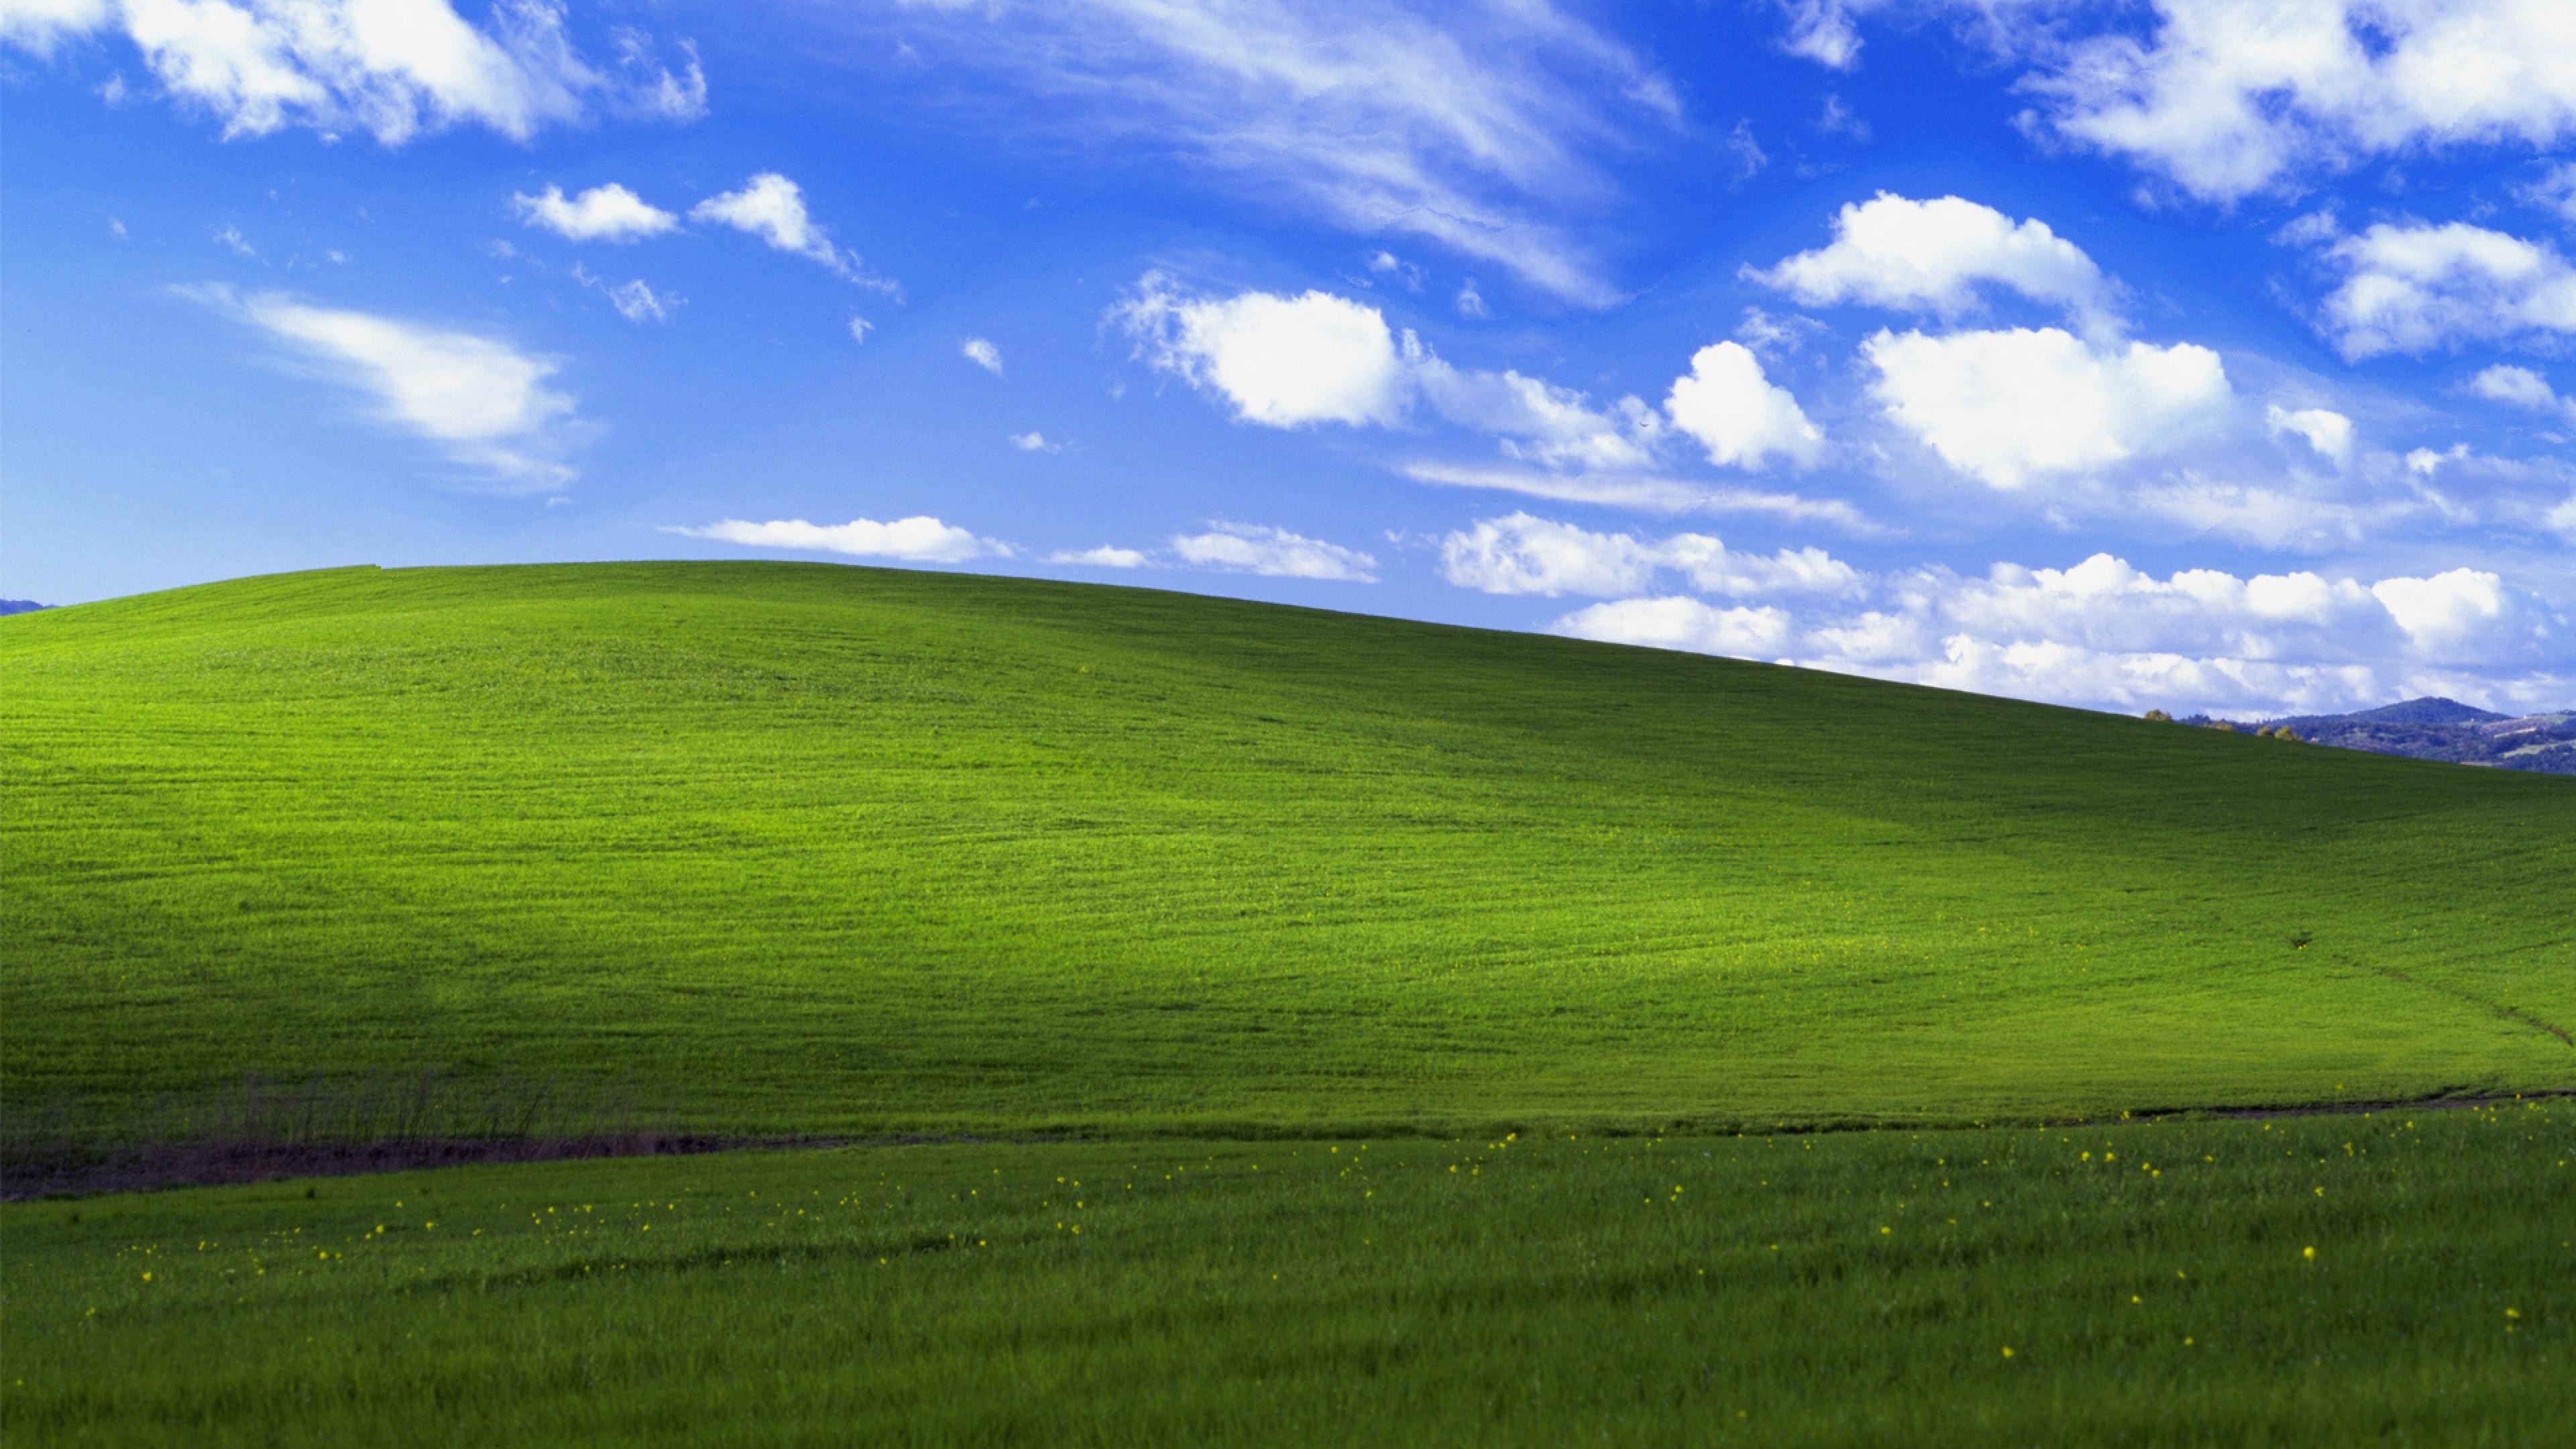 Windows XP Desktop Backgrounds (43+ images)